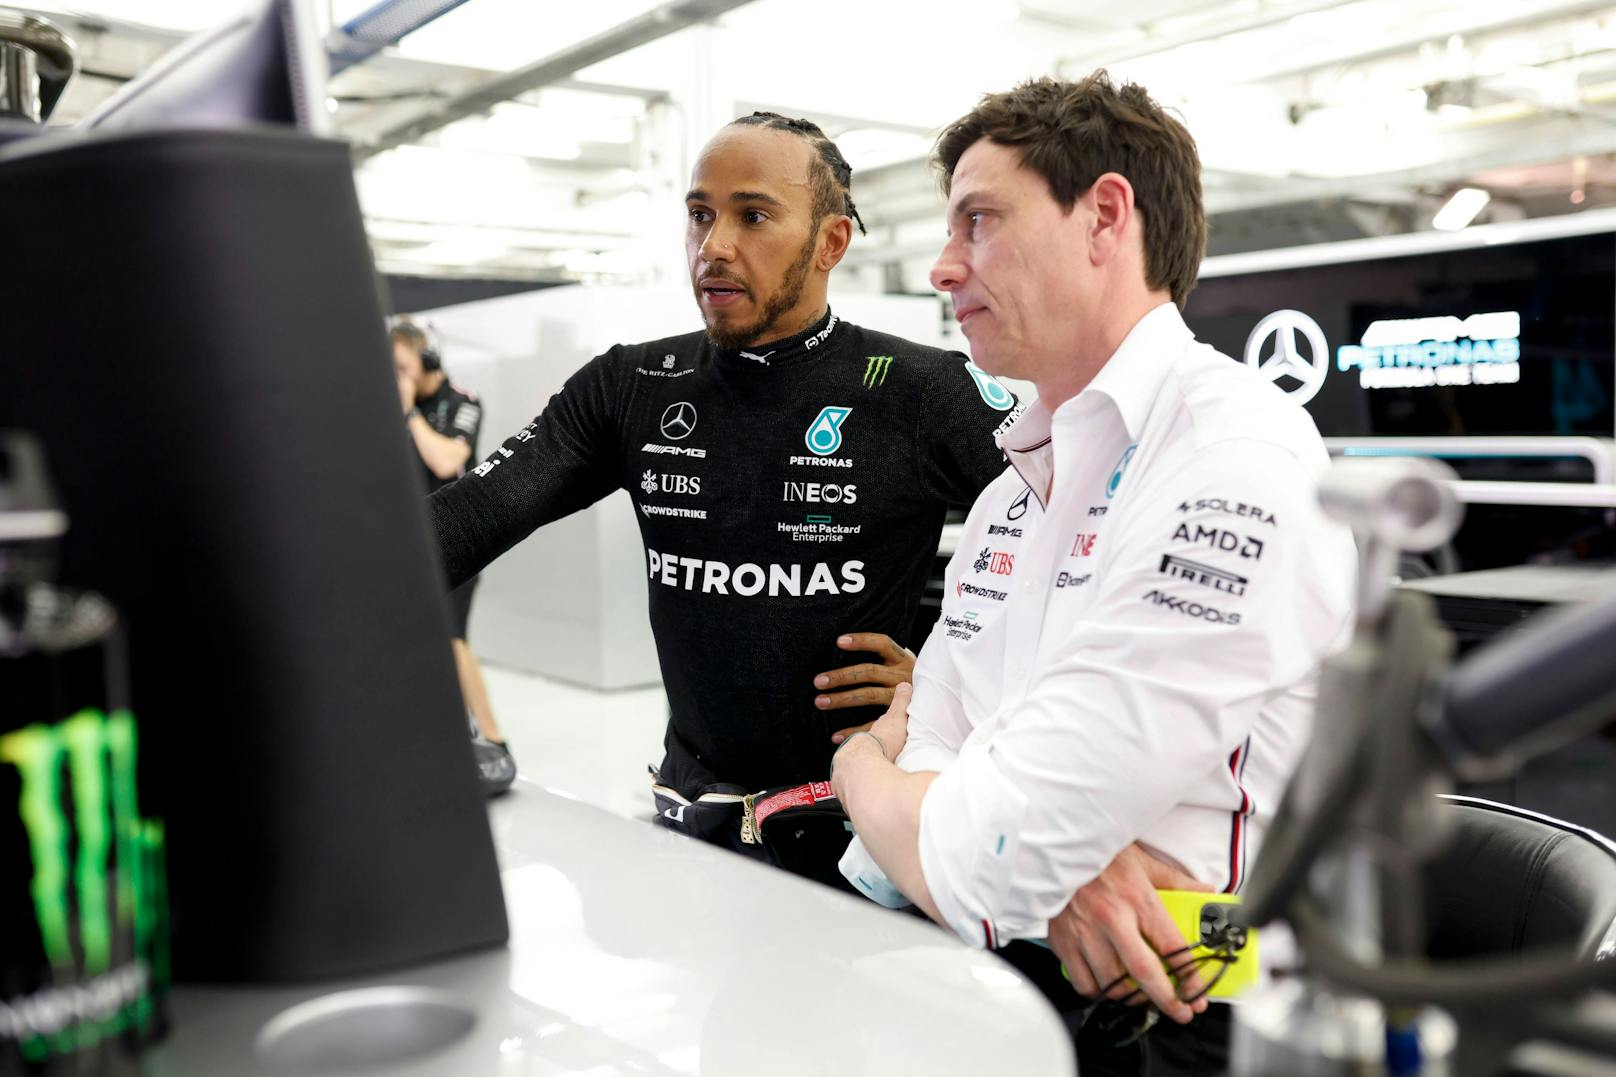 Siebenfach-Weltmeister Lewis Hamilton schlägt beim Blick auf die Zeitentabelle Alarm. 